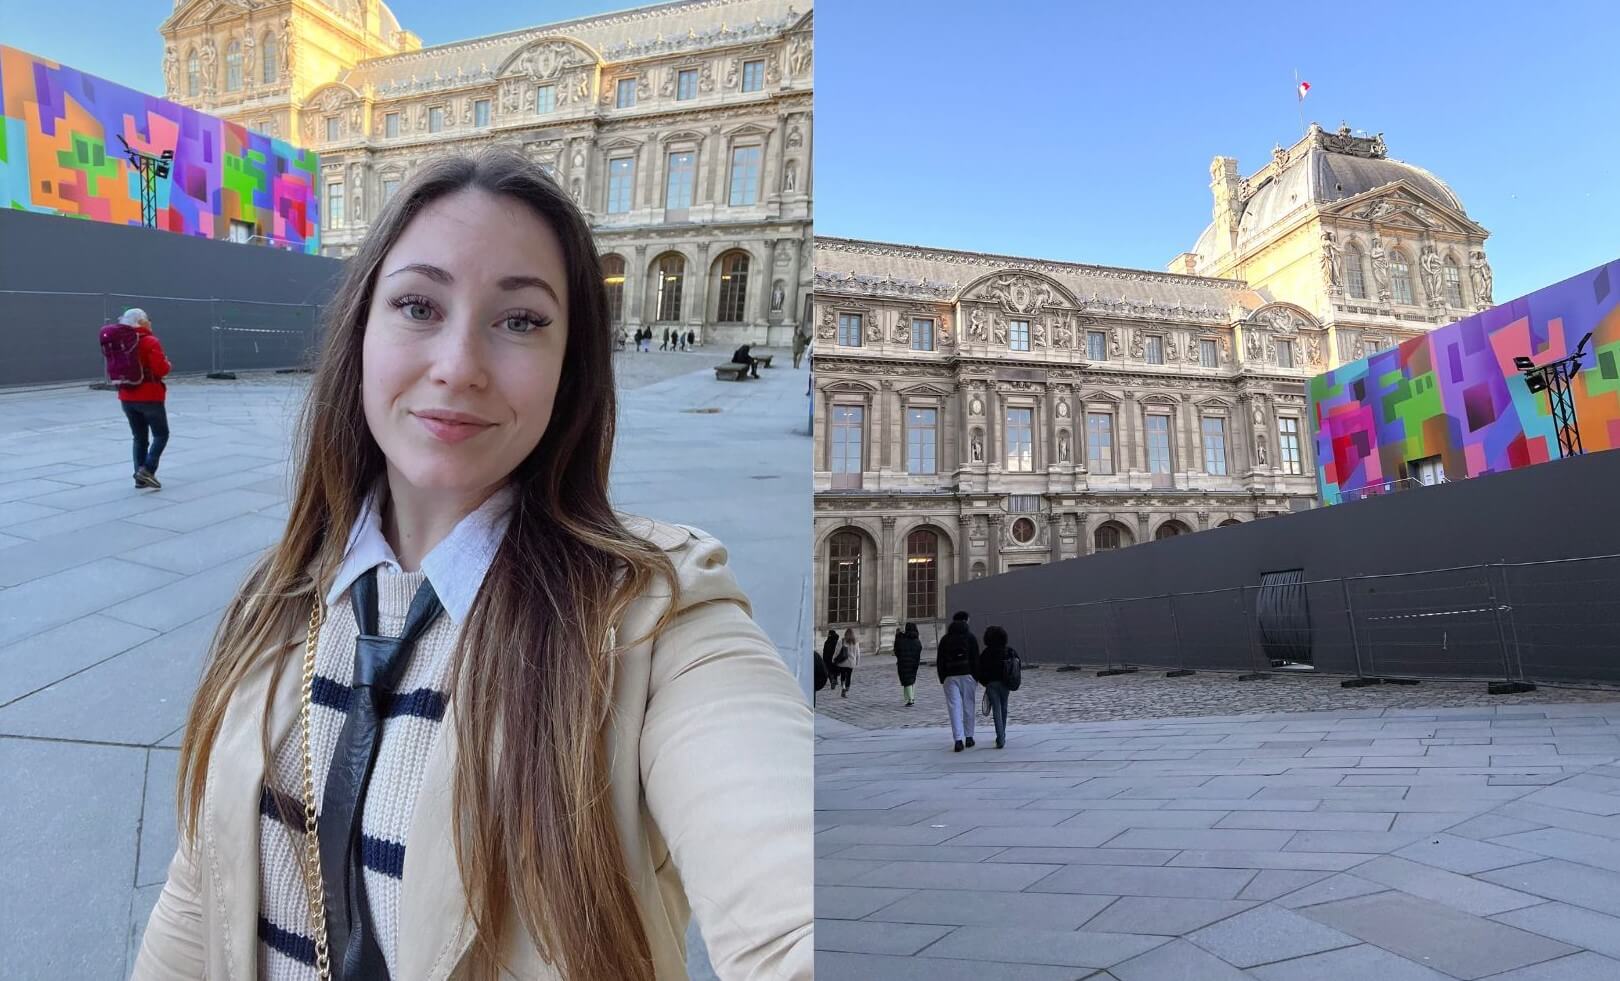 Un visiteur prend un selfie avec le musée du Louvre en arrière-plan, montrant le contraste entre l'architecture historique et les installations modernes.